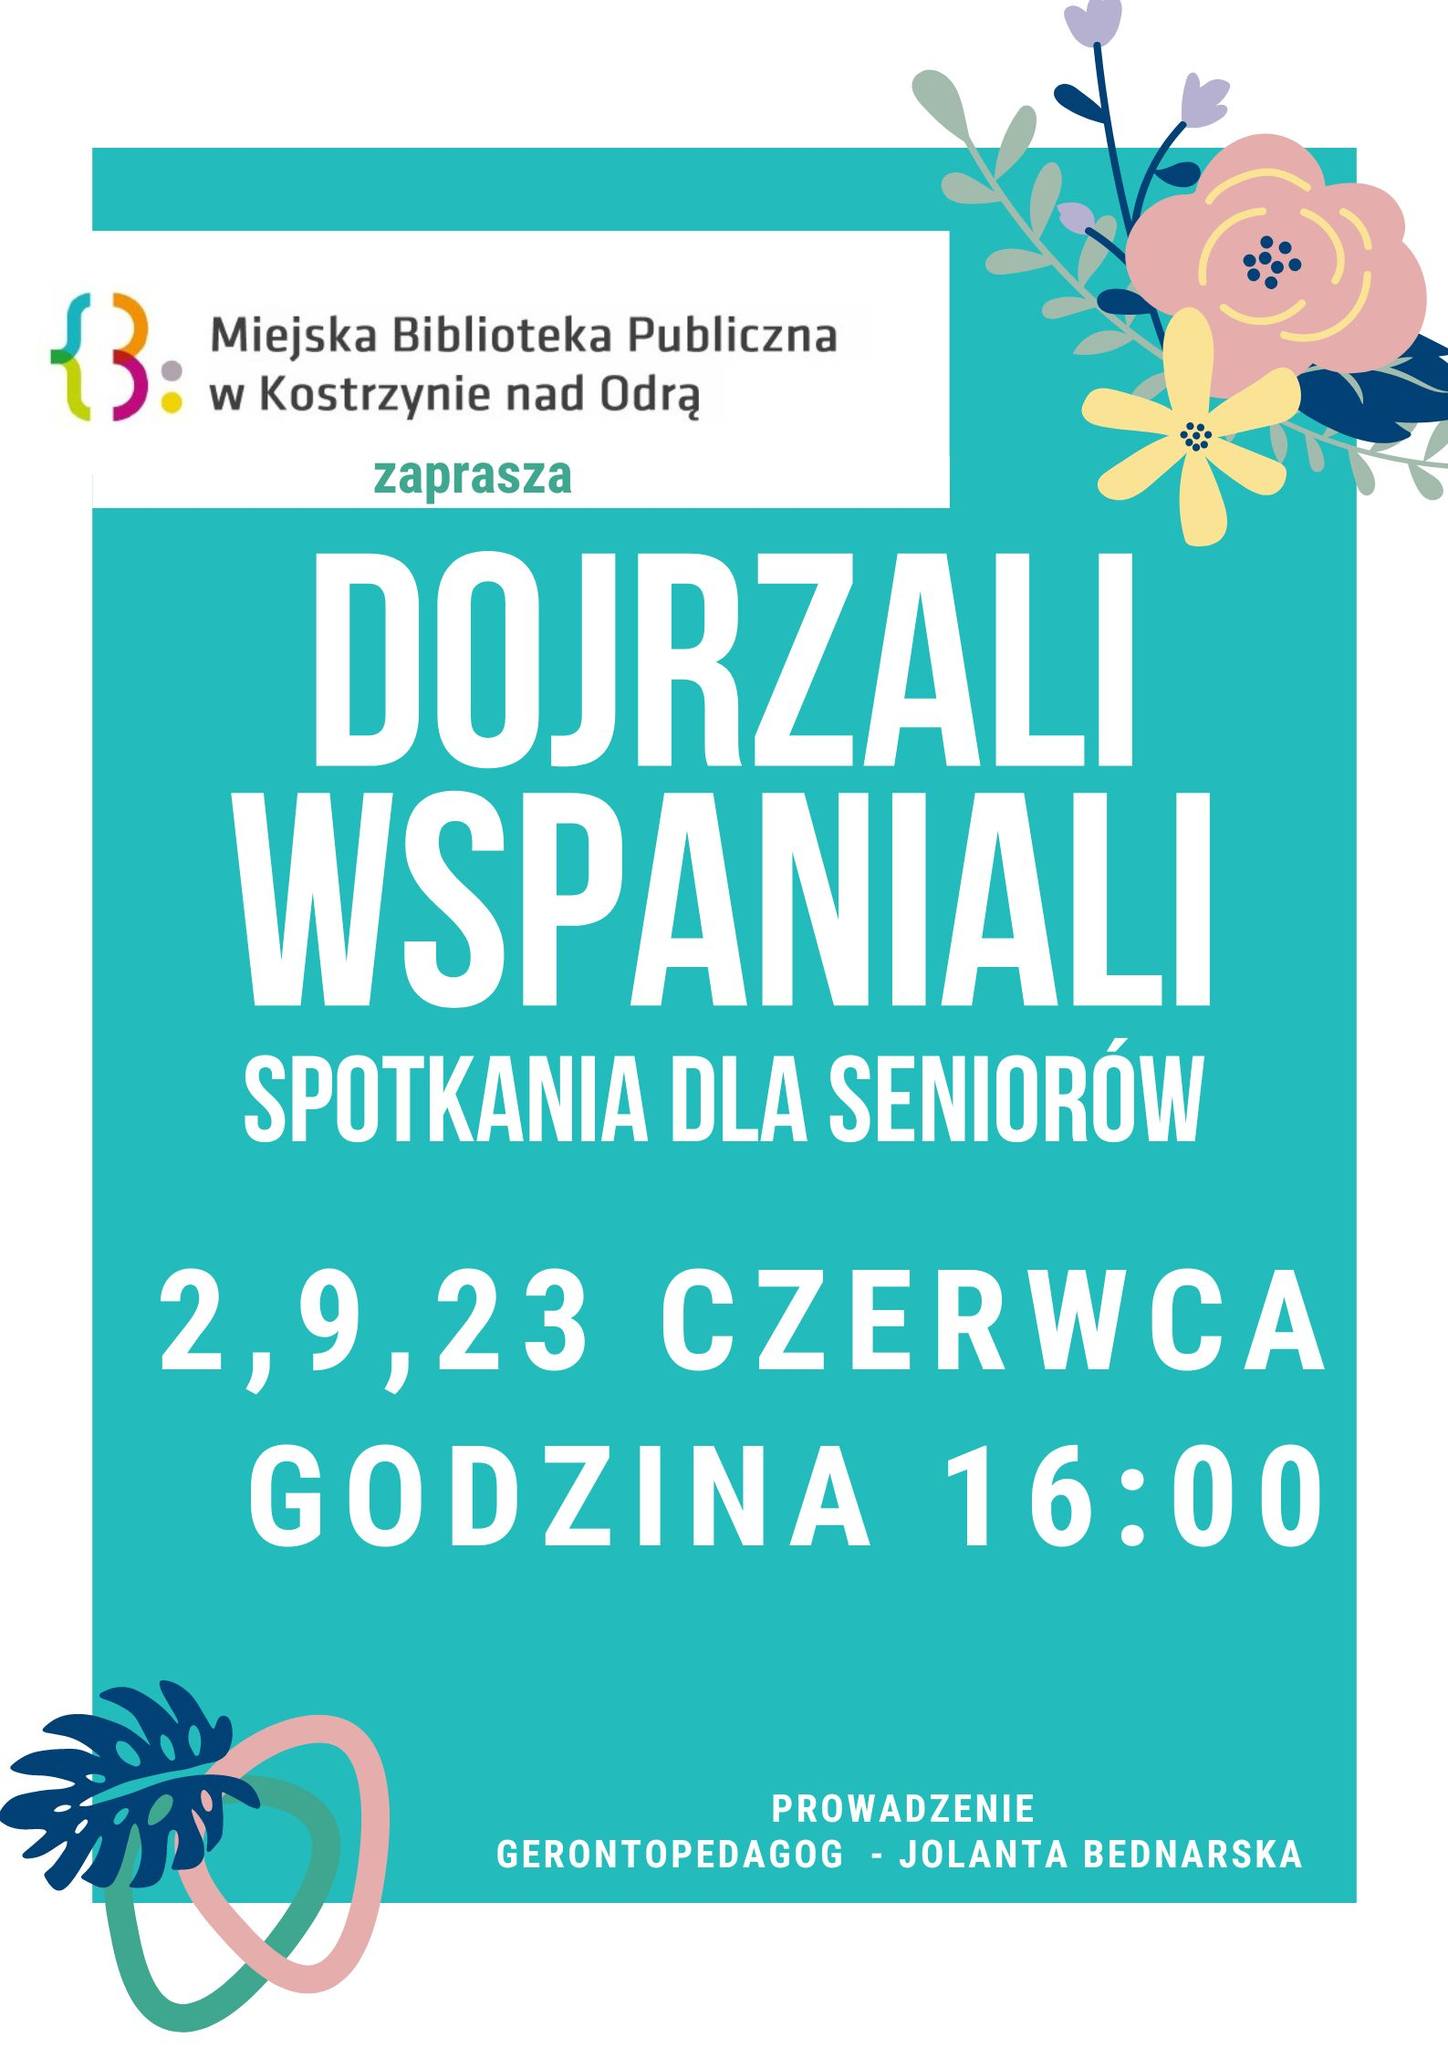 Platat informacyjny o warsztatach Dojrzali Wspaniali - Czerwiec 2022 